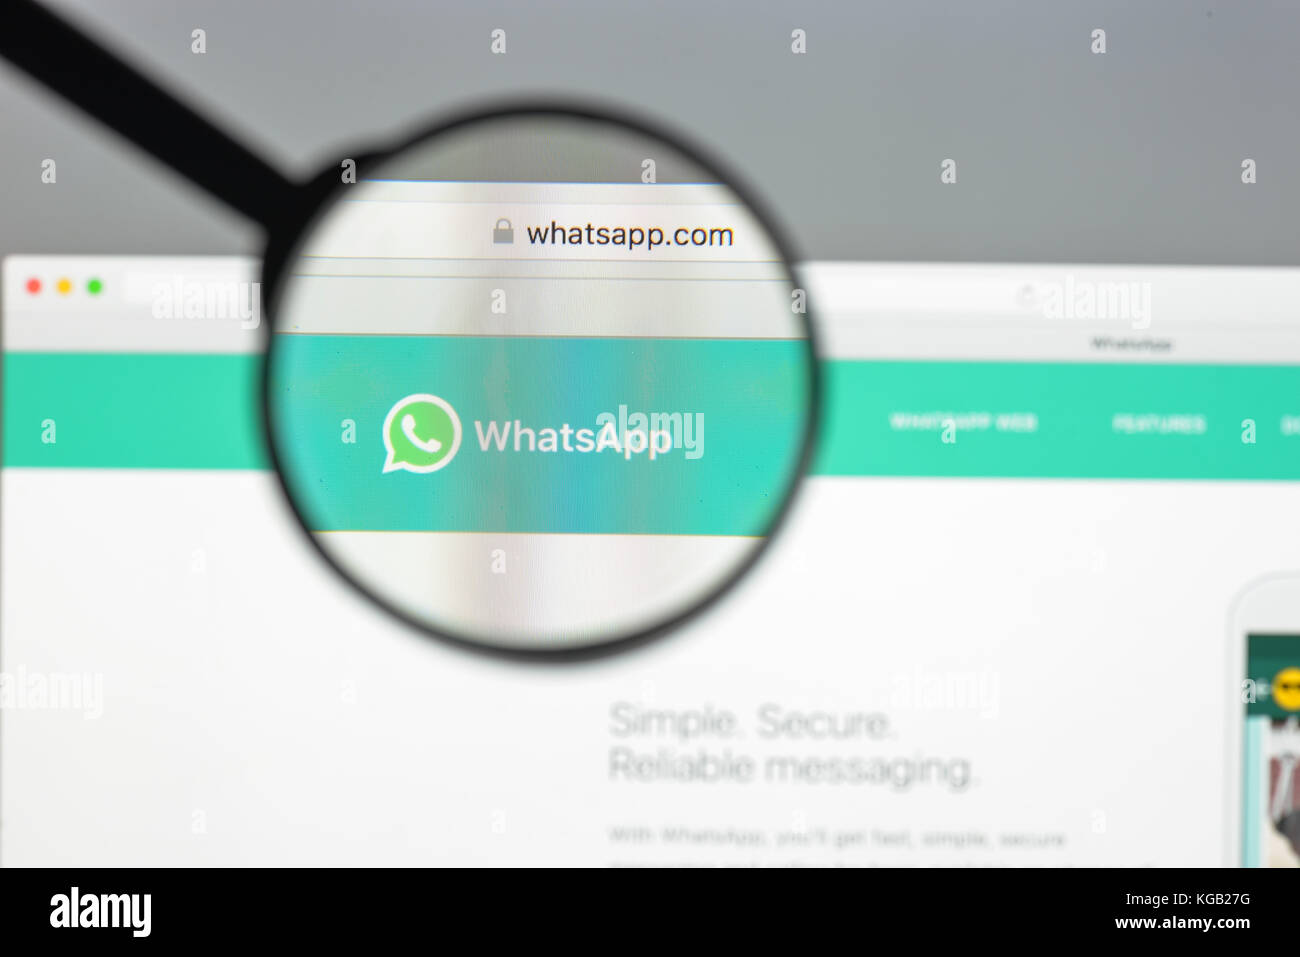 Mailand, Italien - 10 August 2017: whatsapp Homepage. Es ist ein Freeware- und plattformübergreifenden instant messaging service für Smartphones. whatsapp anmelden Stockfoto